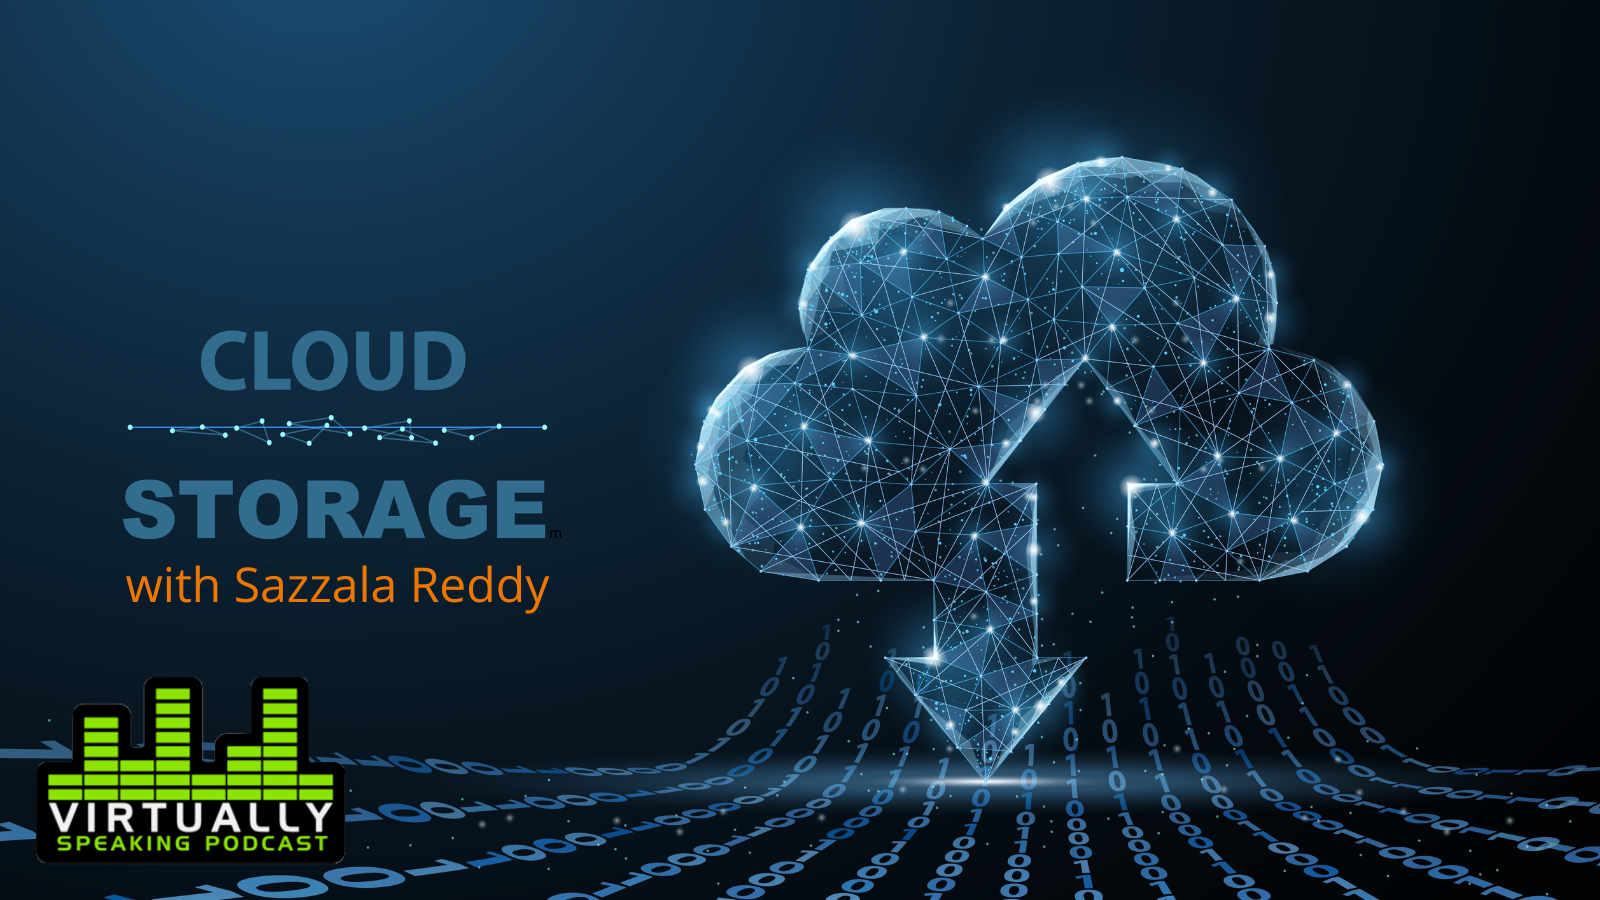 Cloud Storage with Sazzala Reddy